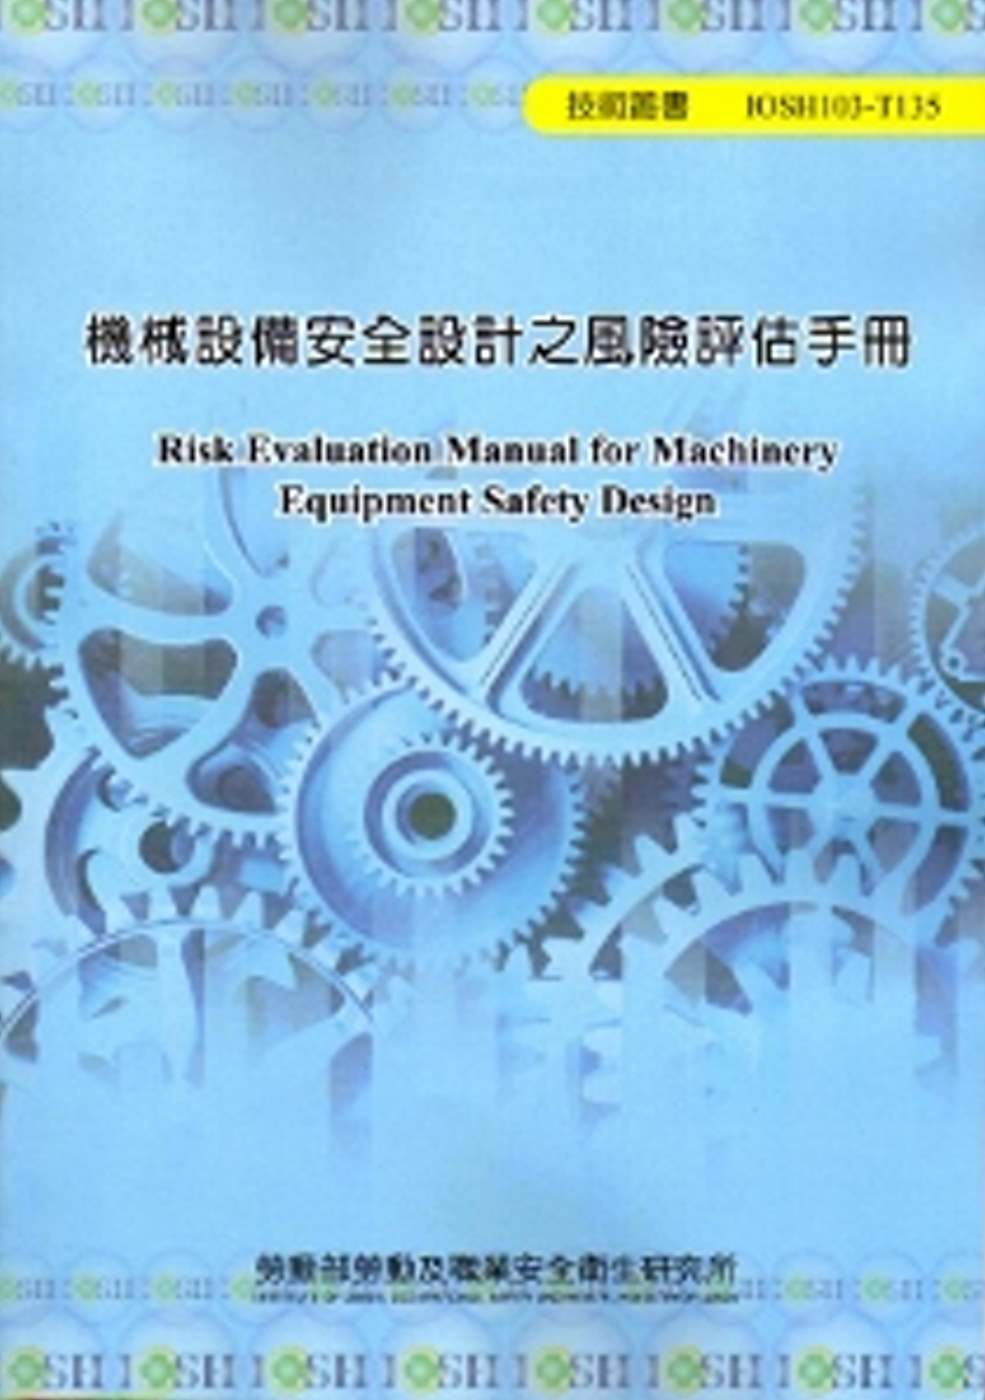 機械設備安全設計之風險評估手冊 103藍-T135